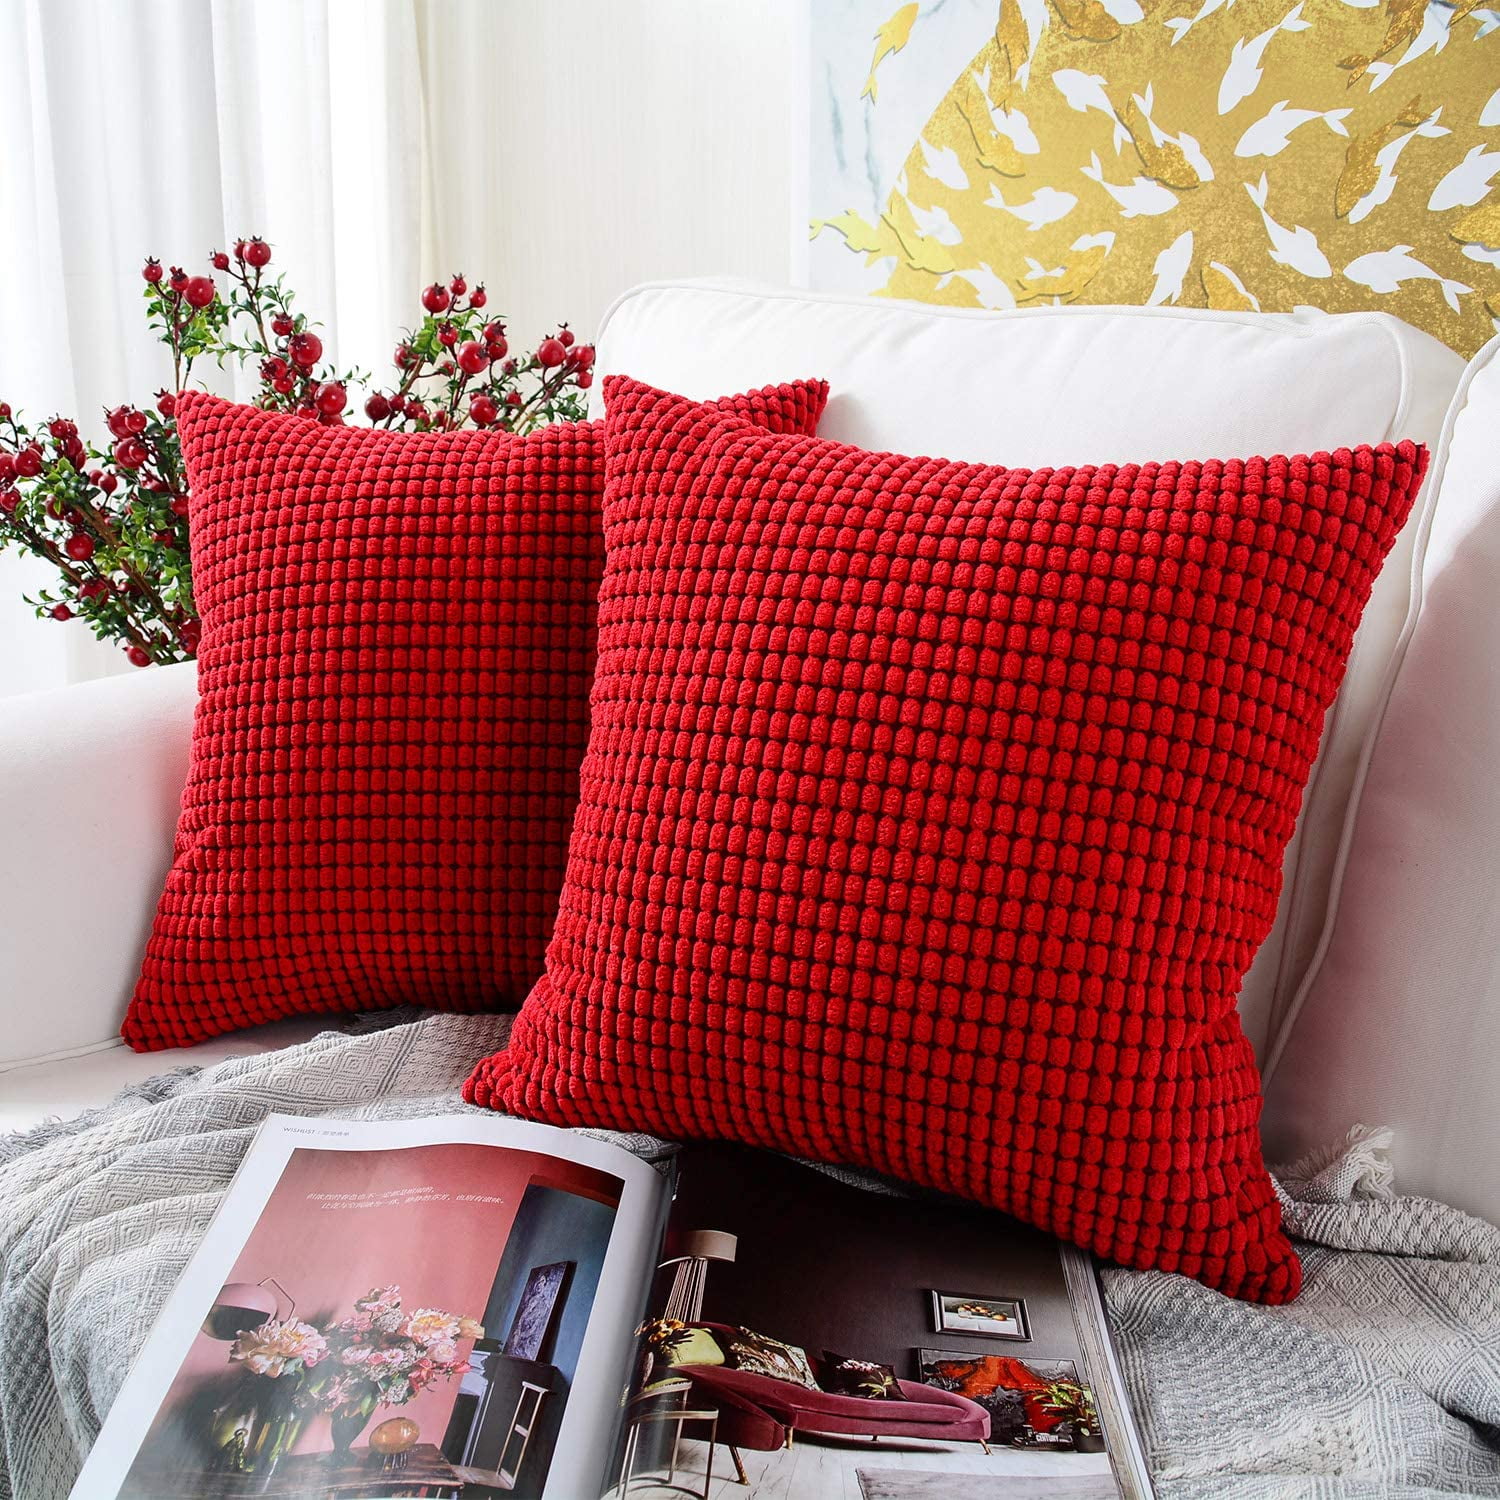 Premium Design Decorative Square Throw Pillow Covers 16x16 Inch 40x40 cm 